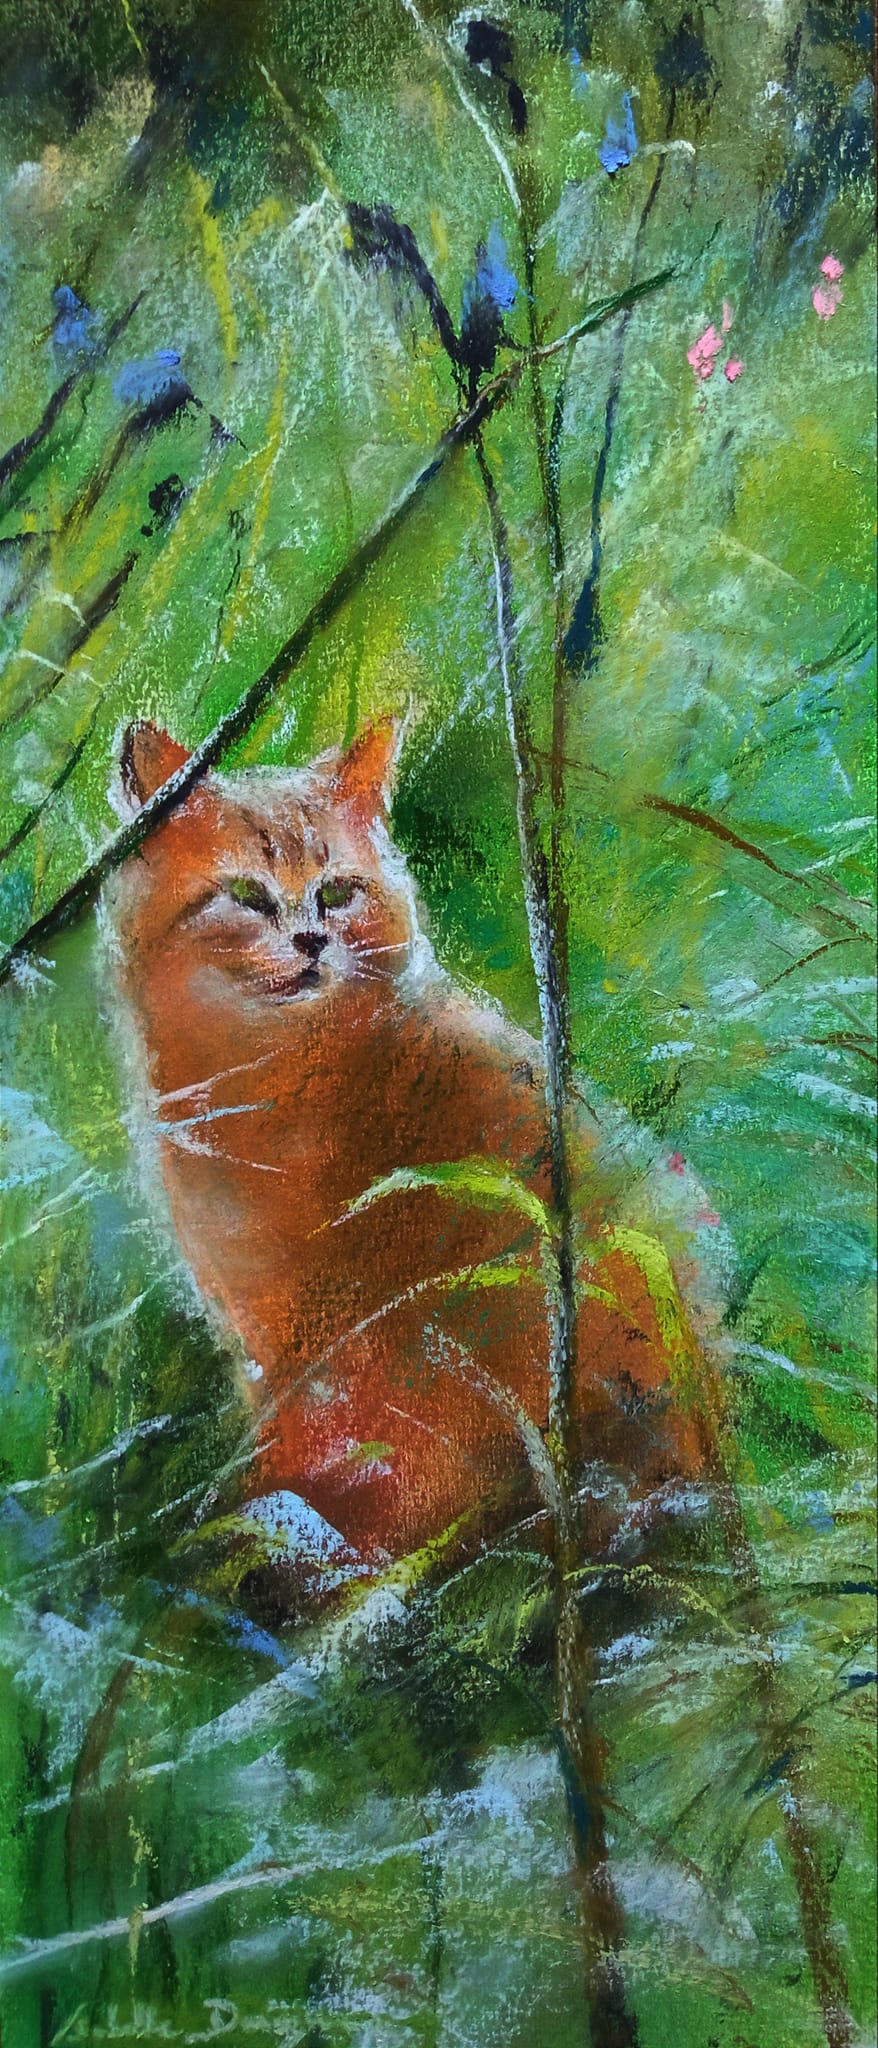 Mon voisin le chat roux - Peinture au pastel sec par l'artiste peintre Isabelle Douzamy - 30 x 57 cm (encadré)